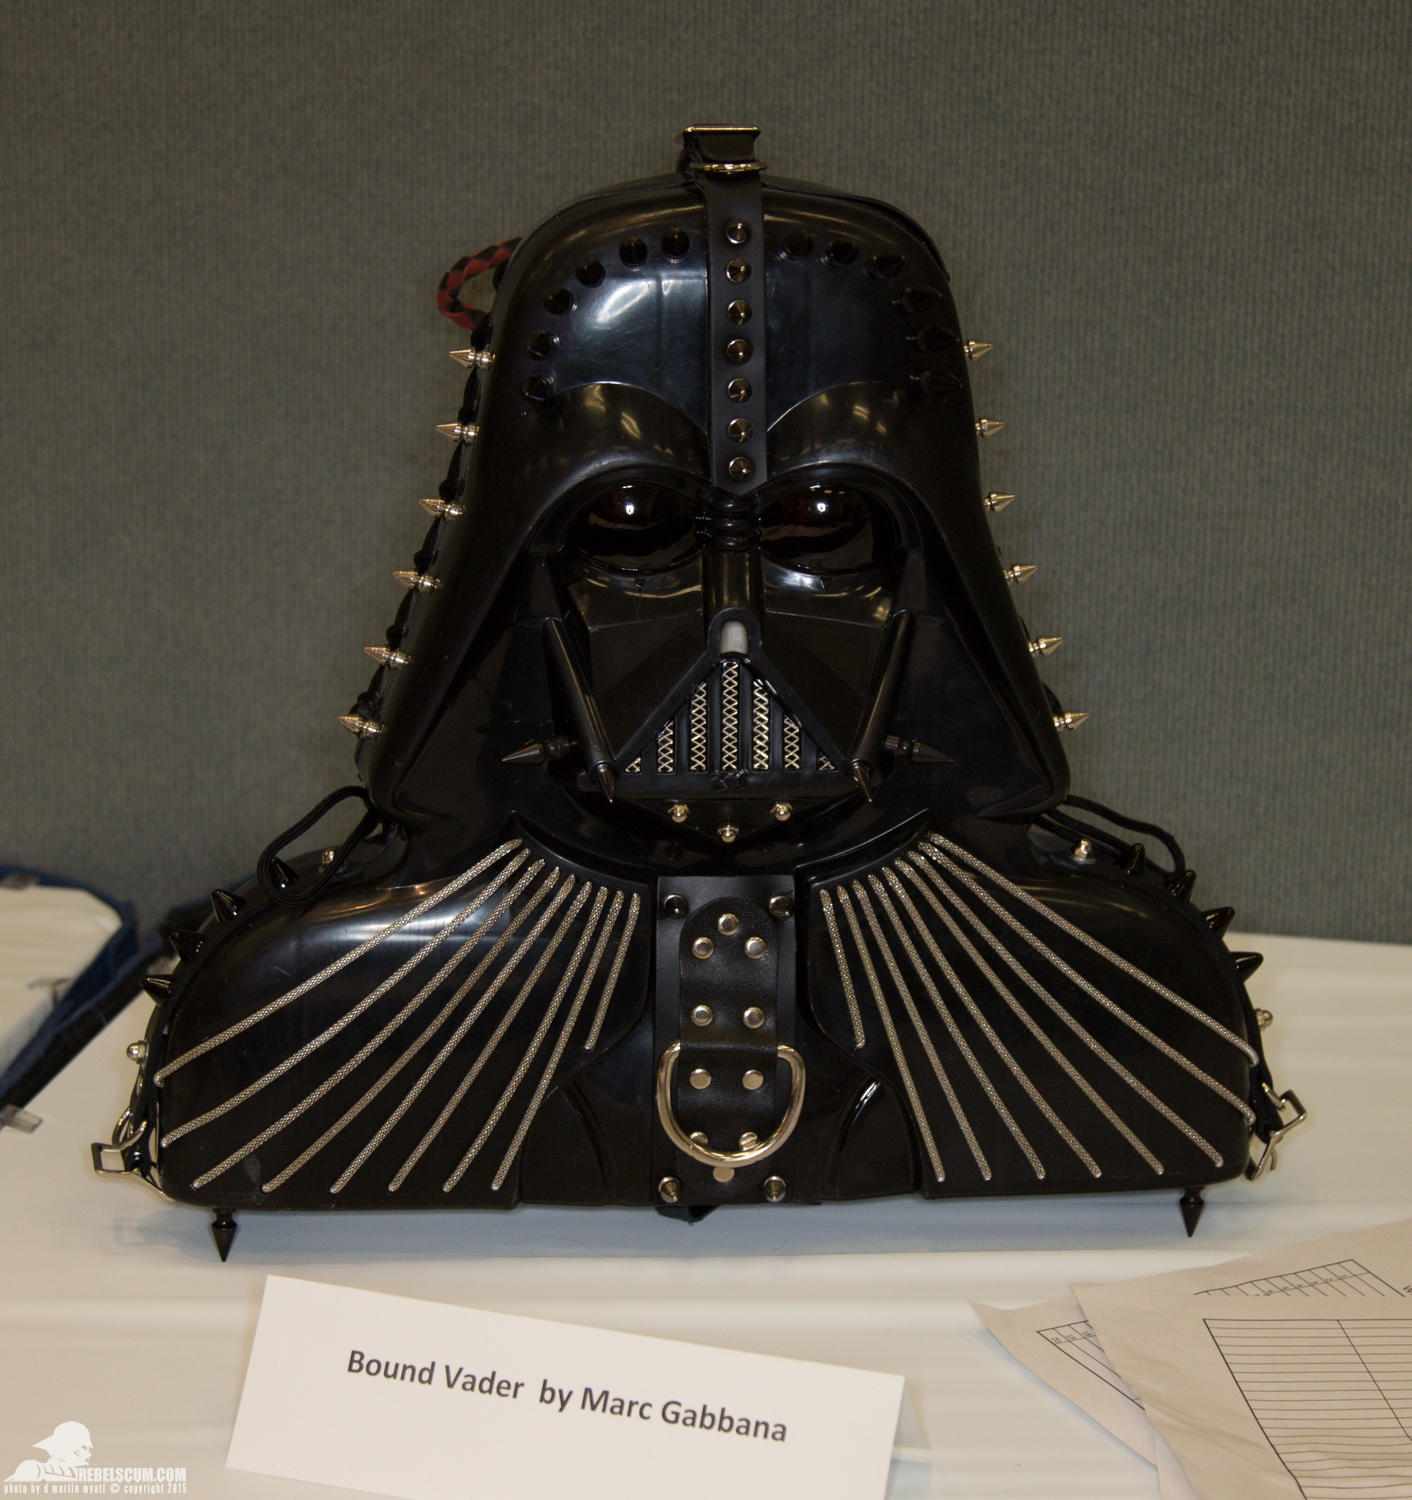 Star-Wars-Celebration-Anaheim-2015-Darth-Vader-Case-Project-018.jpg